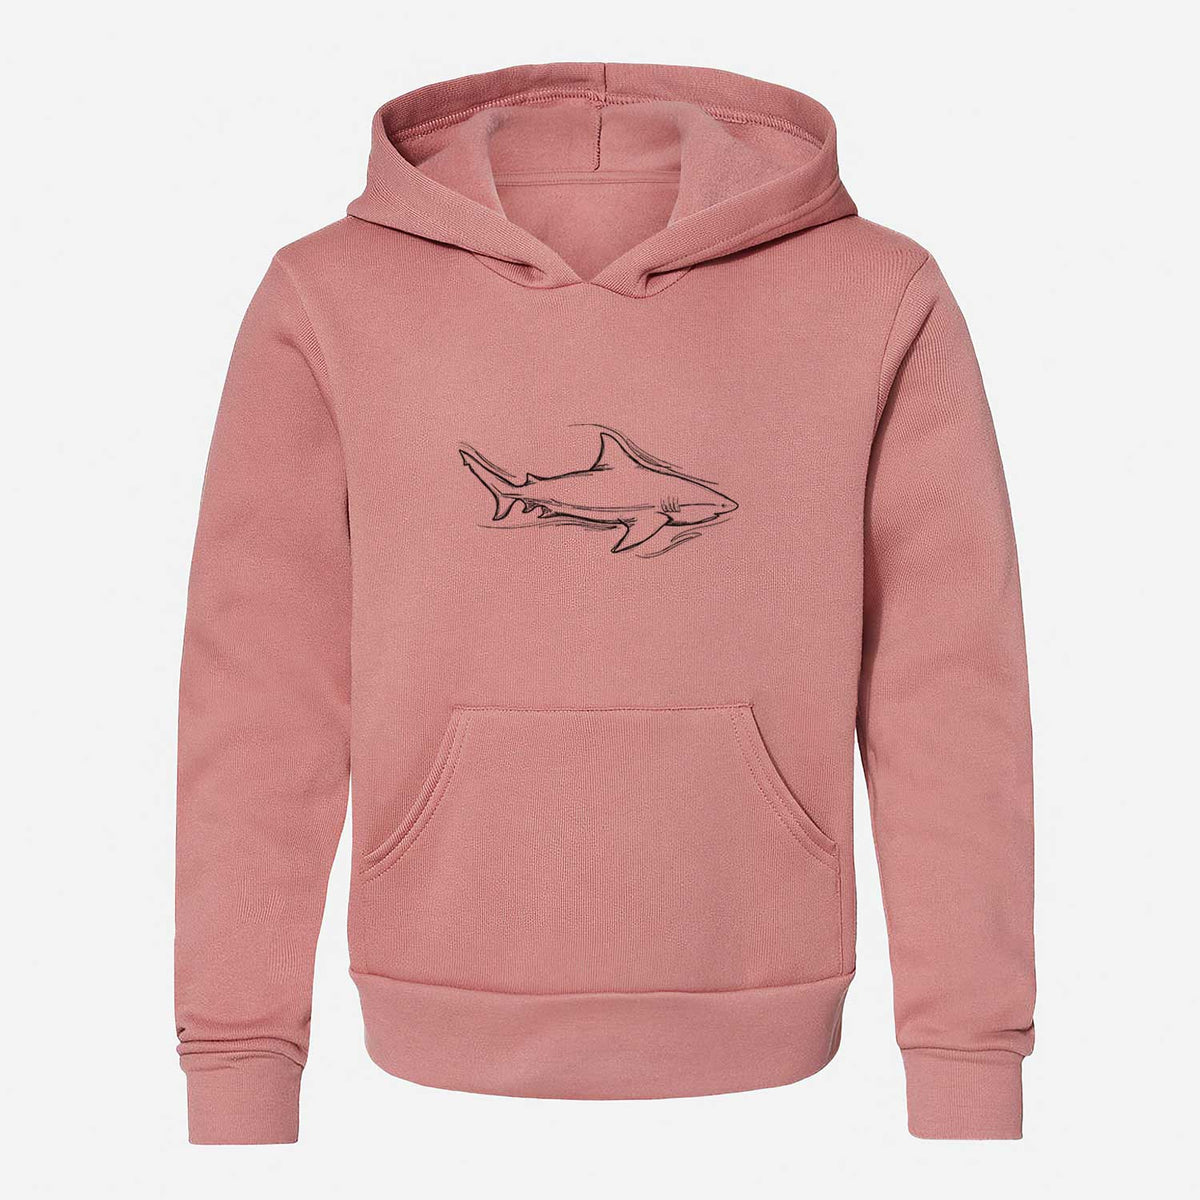 Bull Shark - Youth Hoodie Sweatshirt